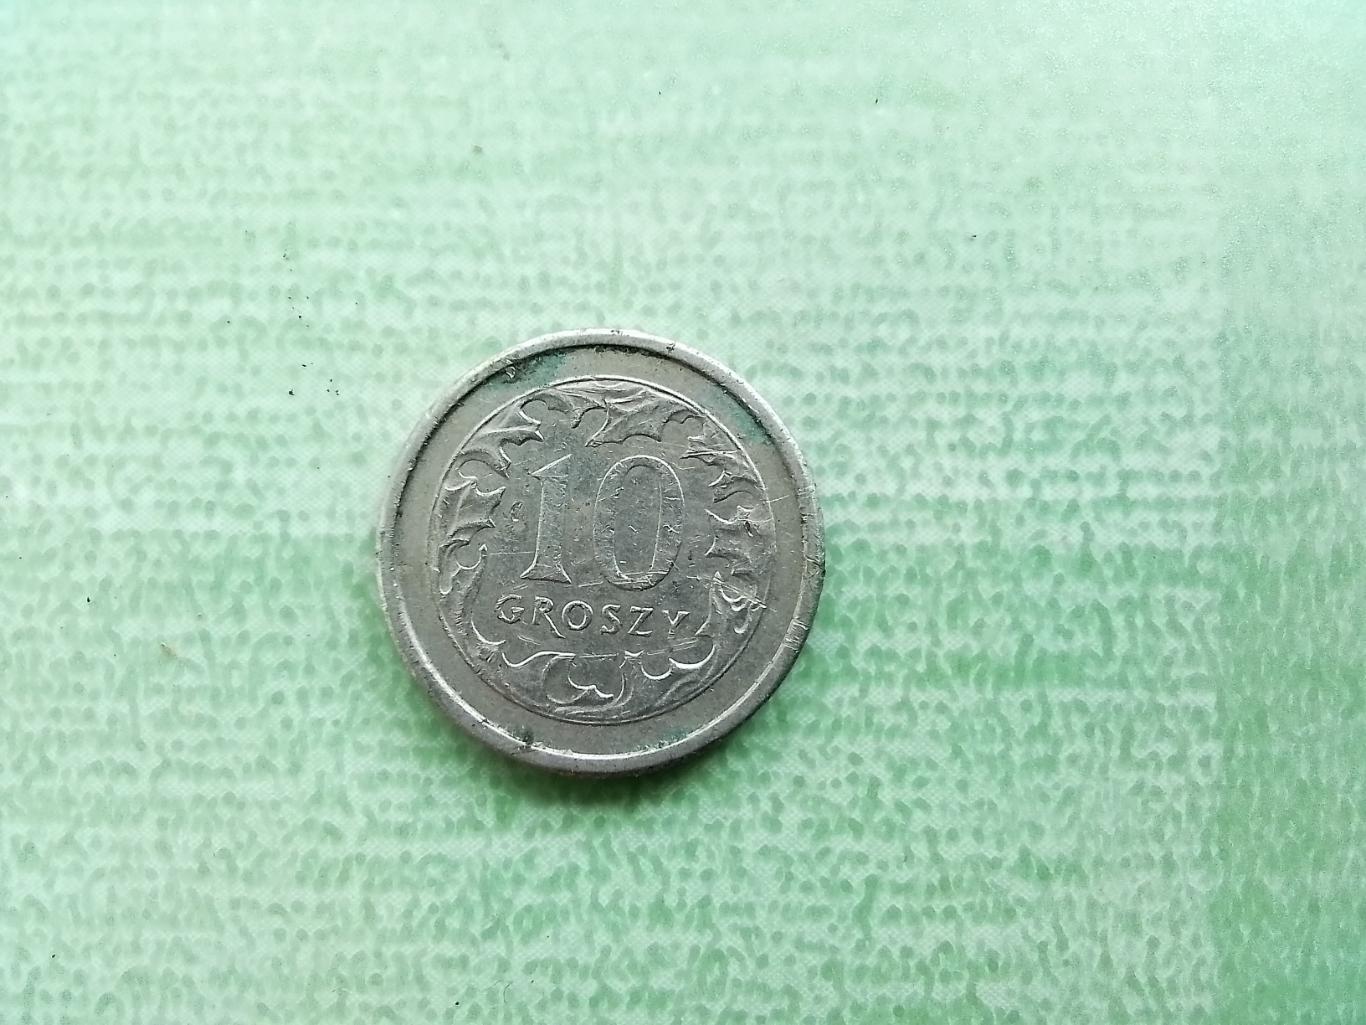 10 грошей Польша 2000